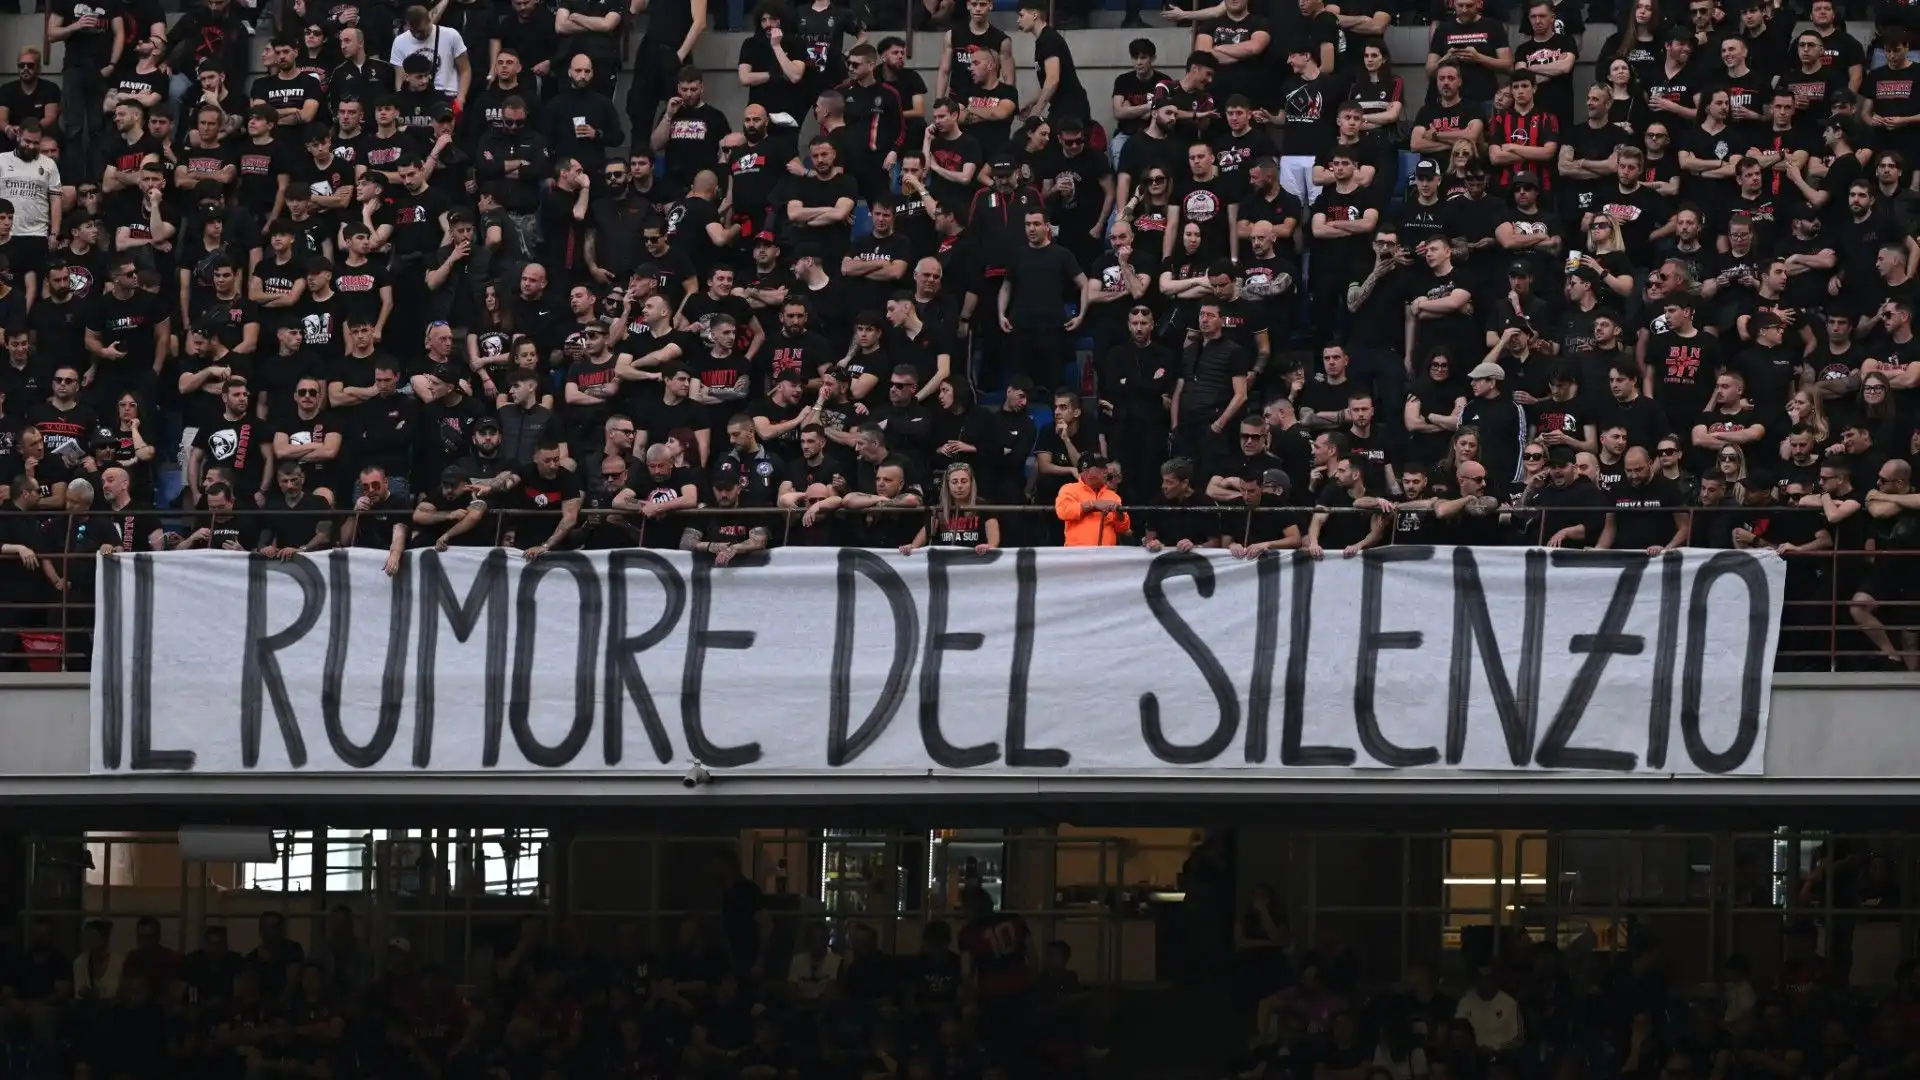 Durante il match contro il Genoa, la Curva Sud non ha esibito nessuna bandiera e non ha intonato alcun coro